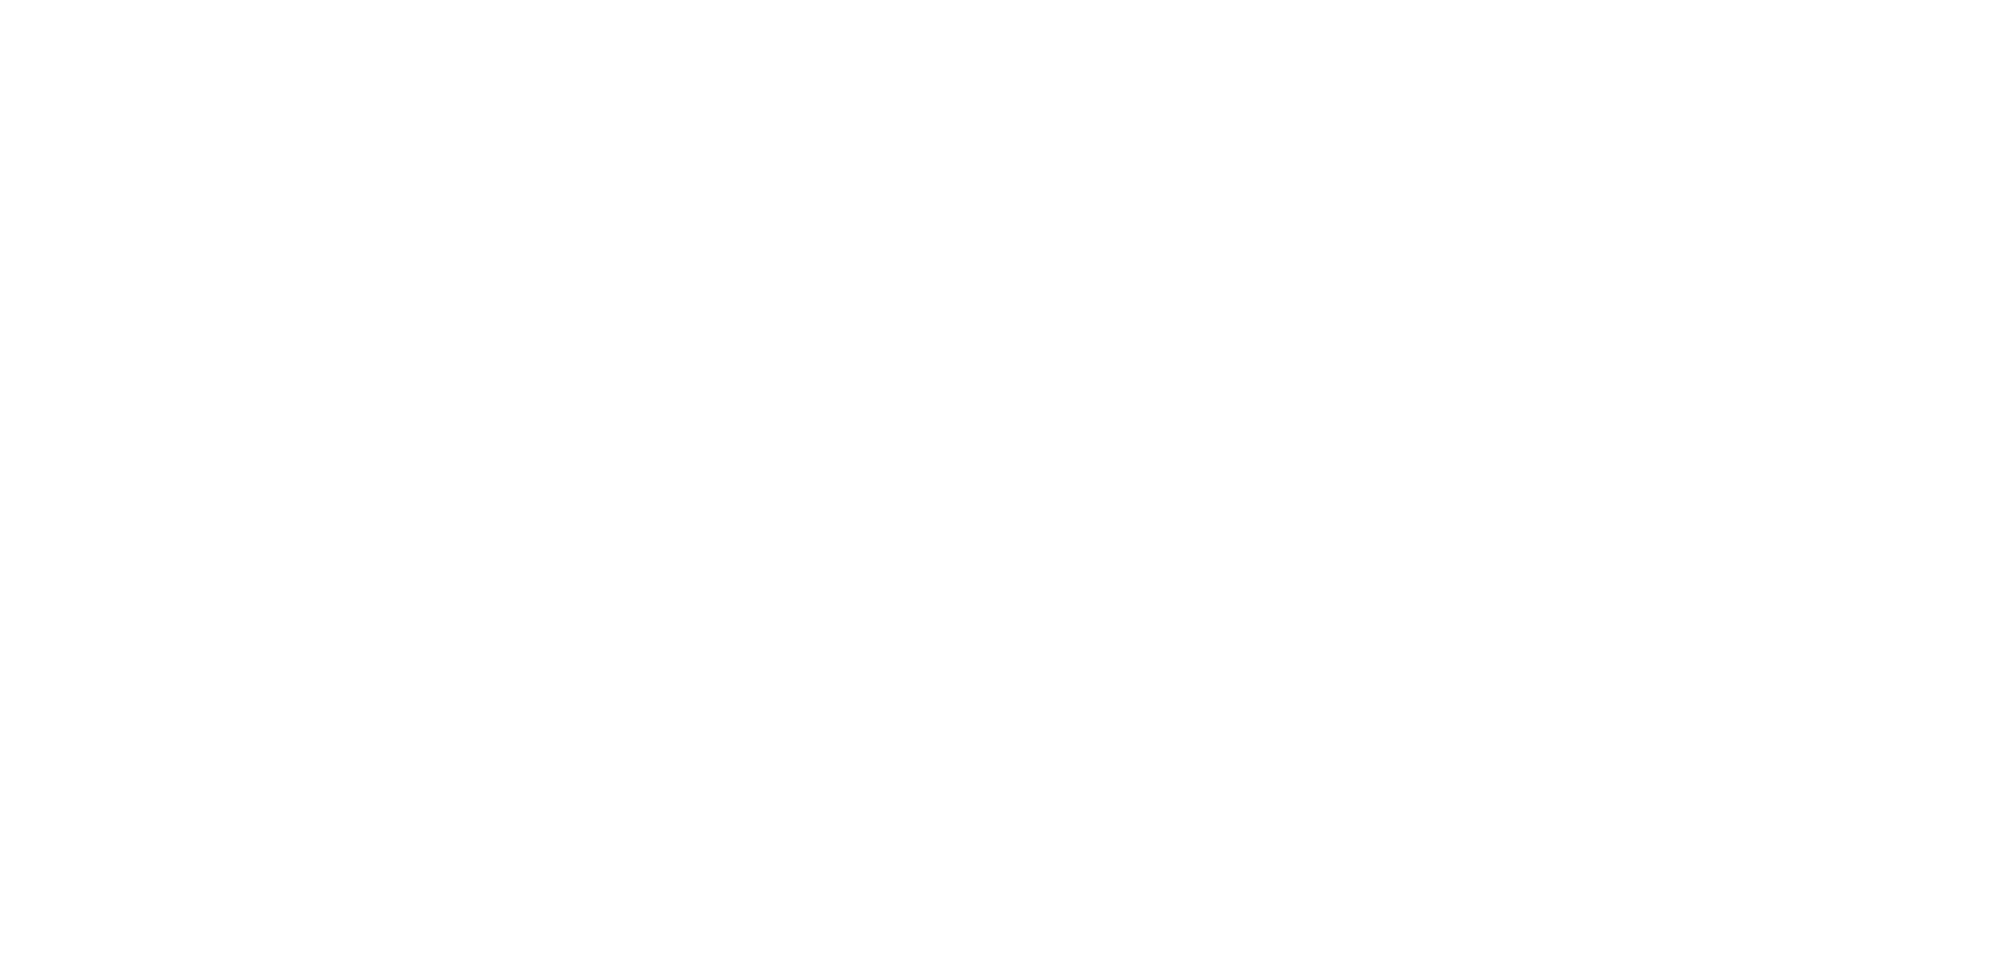 Colorado We Buy Houses Company Reviews